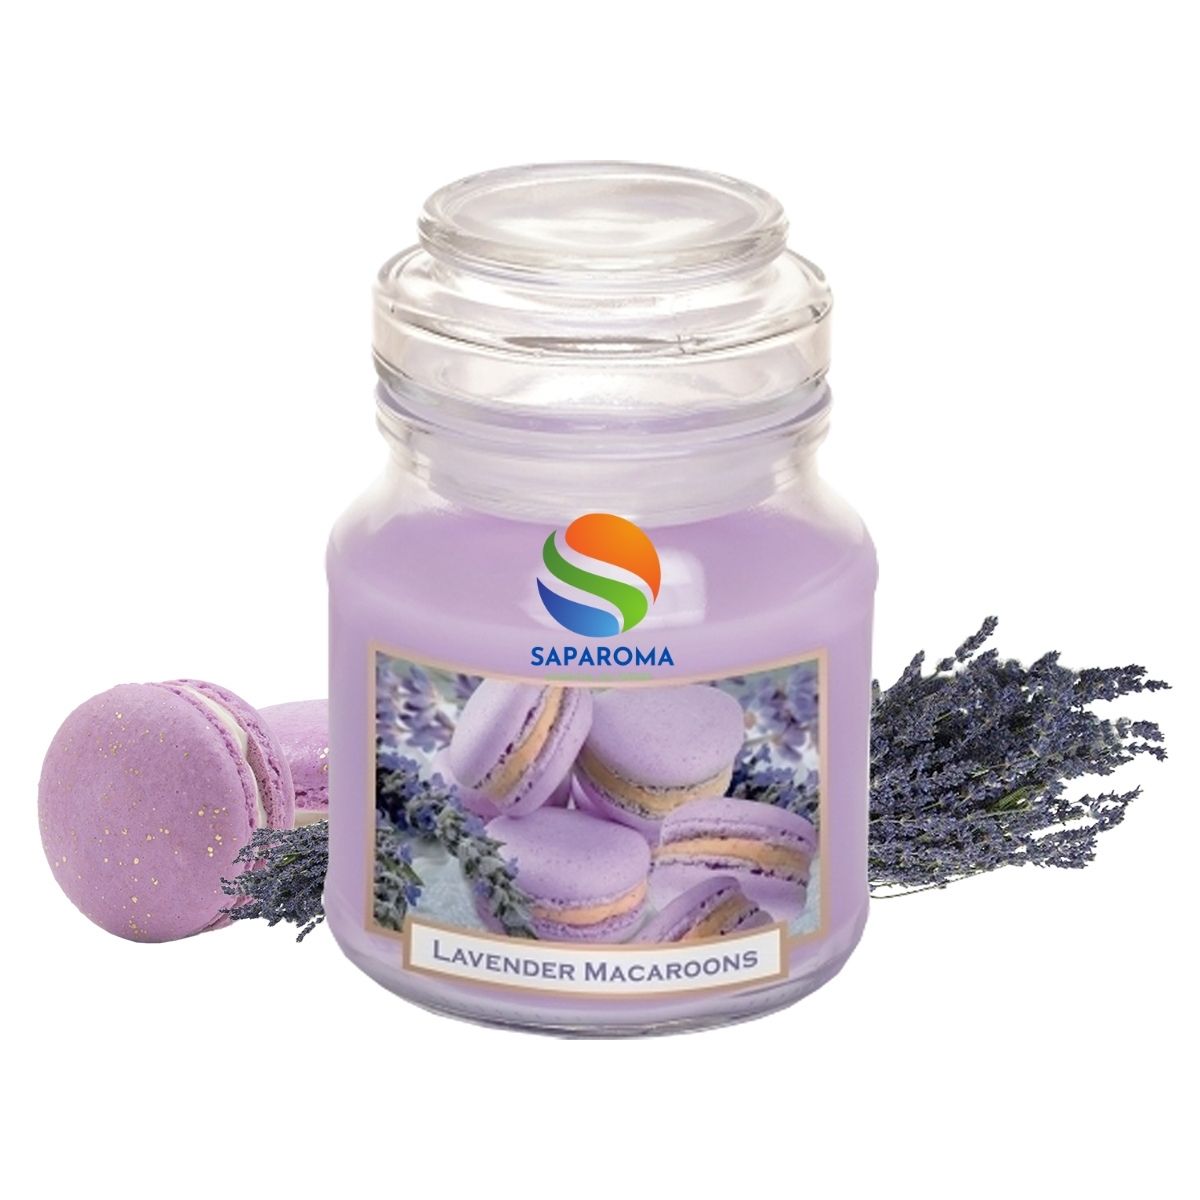 Hũ nến thơm tinh dầu Bartek Lavender Cake 130g QT0448 - hoa oải hương khô, nến thơm Hỗ trợ khử mùi, nến trang trí, thơm phòng, thư giãn (giao mẫu ngẫu nhiên)